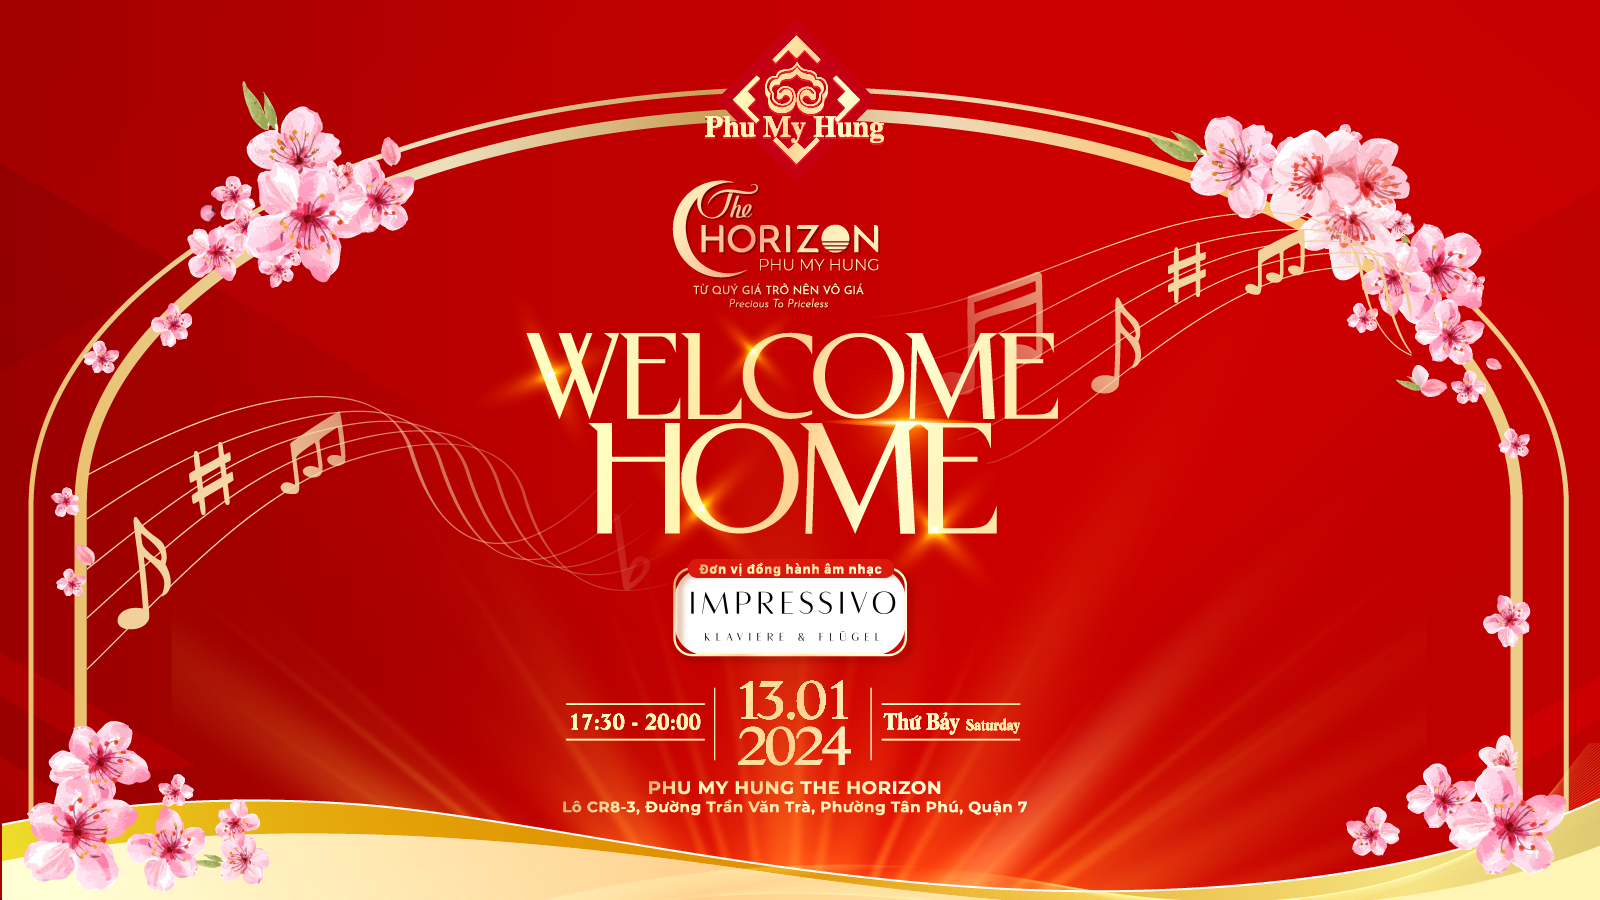 Phu My Hung The Horizon: “Welcome Home” Chào đón chủ nhân về nhà mới